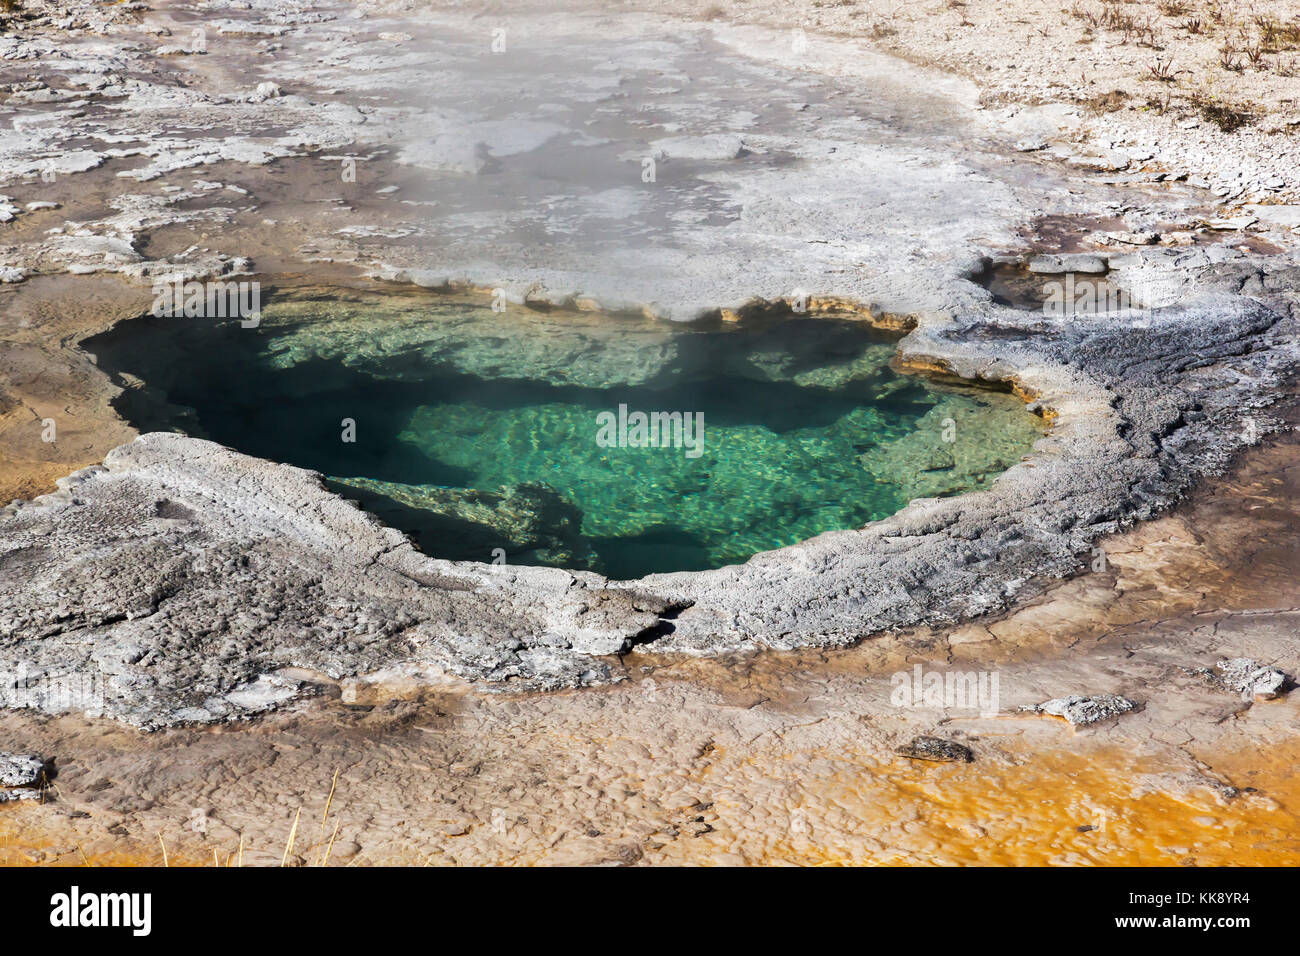 La dépression thermique dans la fonction geyser geyser Basin, parc national de Yellowstone Banque D'Images